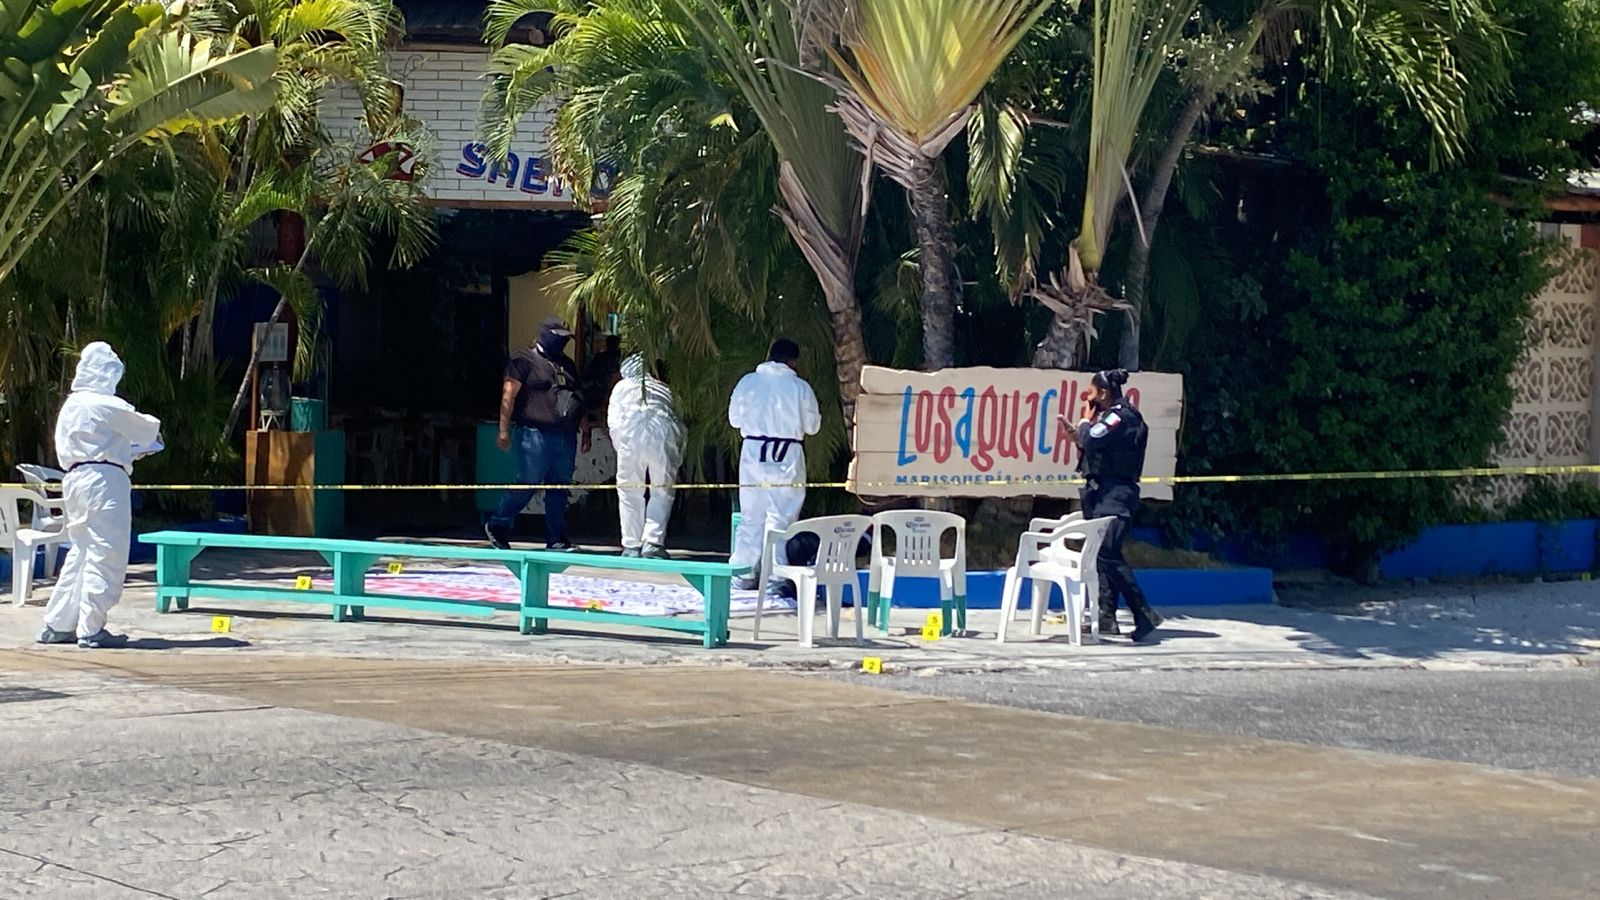 ATAQUE EN 'LOS AGUACHILES': Asesinan a guardia de seguridad afuera de  restaurante de mariscos en Cancún; dejan manta con amenazas - Noticaribe